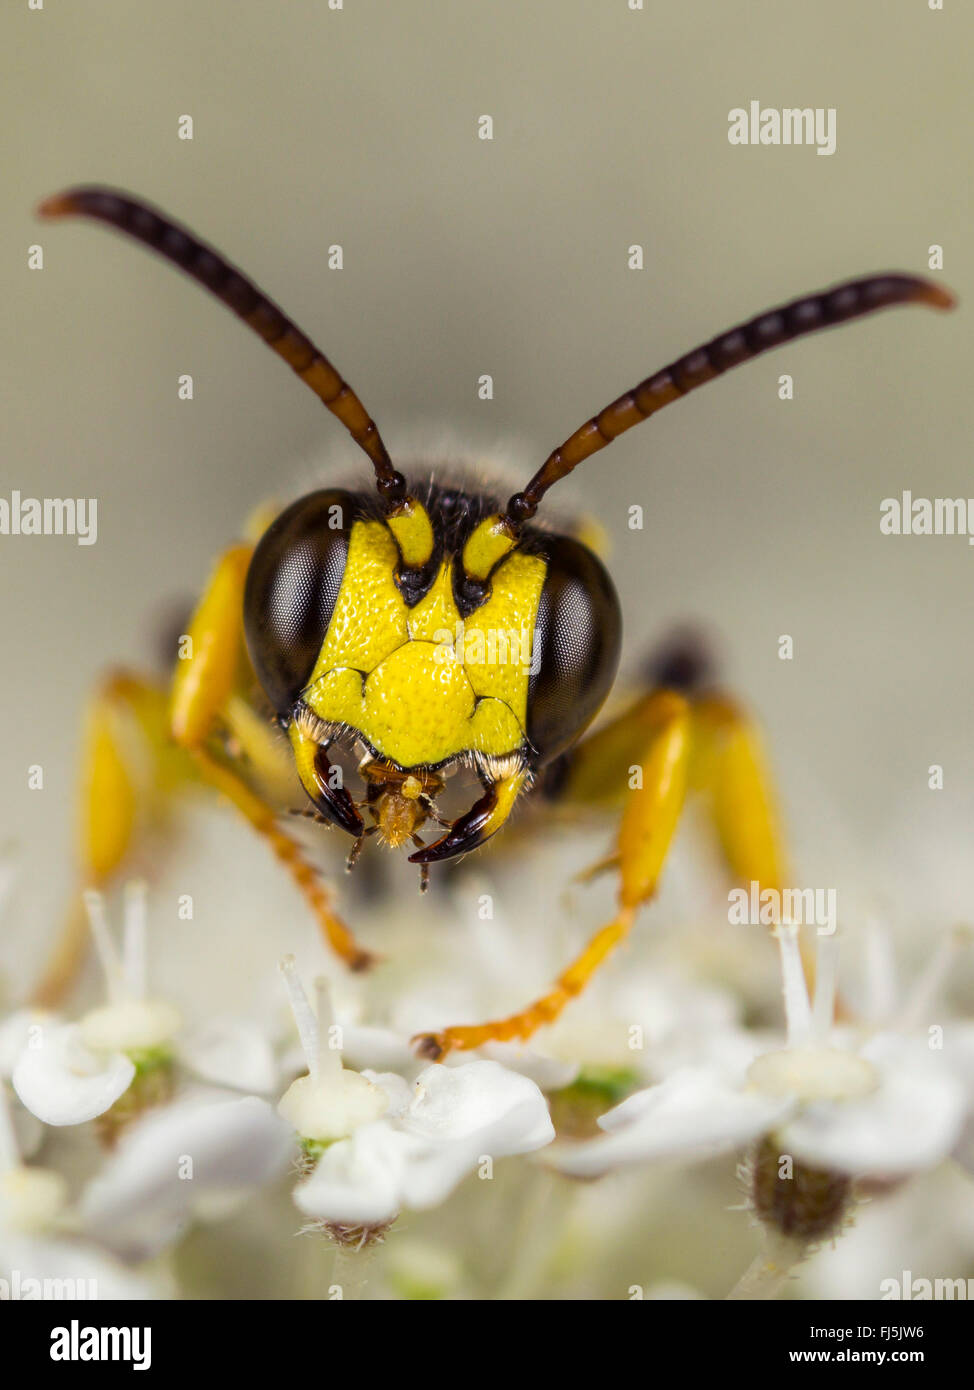 Sand-tailed digger wasp (Cerceris arenaria), homme le toilettage sur la carotte sauvage (Daucus carota), Allemagne Banque D'Images